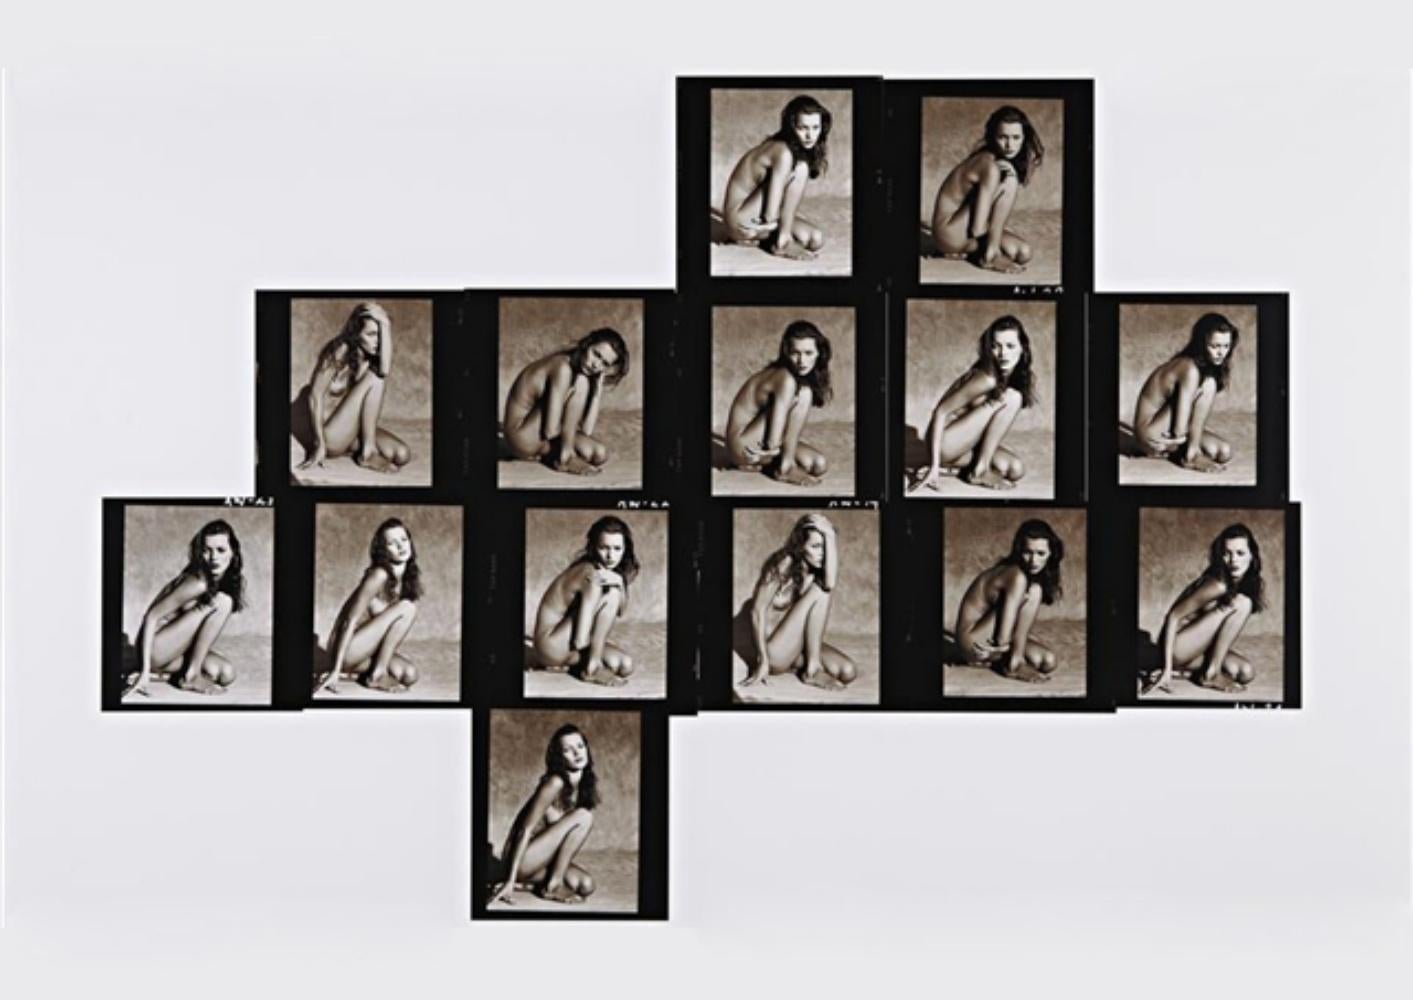 Albert WATSON (*1942, Schottland)
Kate Moss Kontaktbogen (horizontal), Marrakesch, 1993
Chromogener Druck
Blatt 218,4 x 152,4 cm (86 x 60 in.)
Auflage von 5; plus 1 AP; AP1
nur drucken

Albert Watson wurde 1942 in Edinburgh, Schottland, geboren.

Er